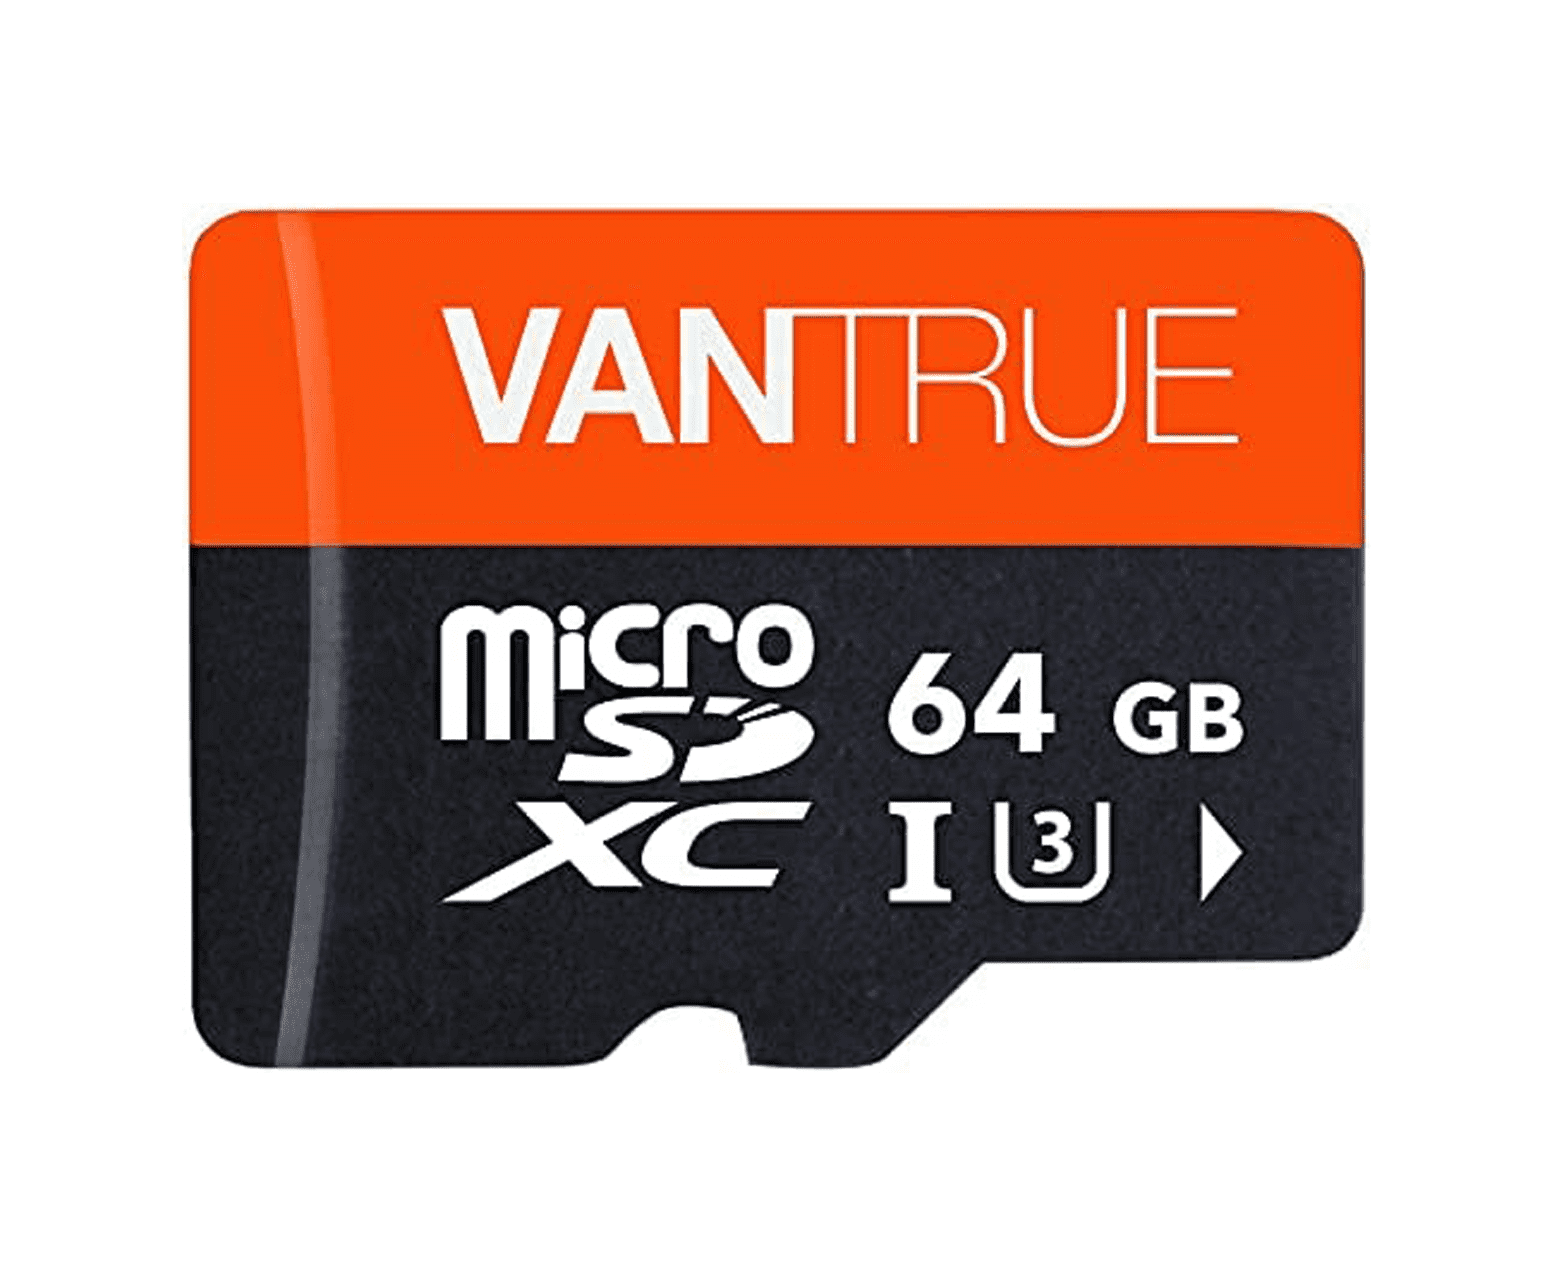 Vantrue 064 GB SD-Karte